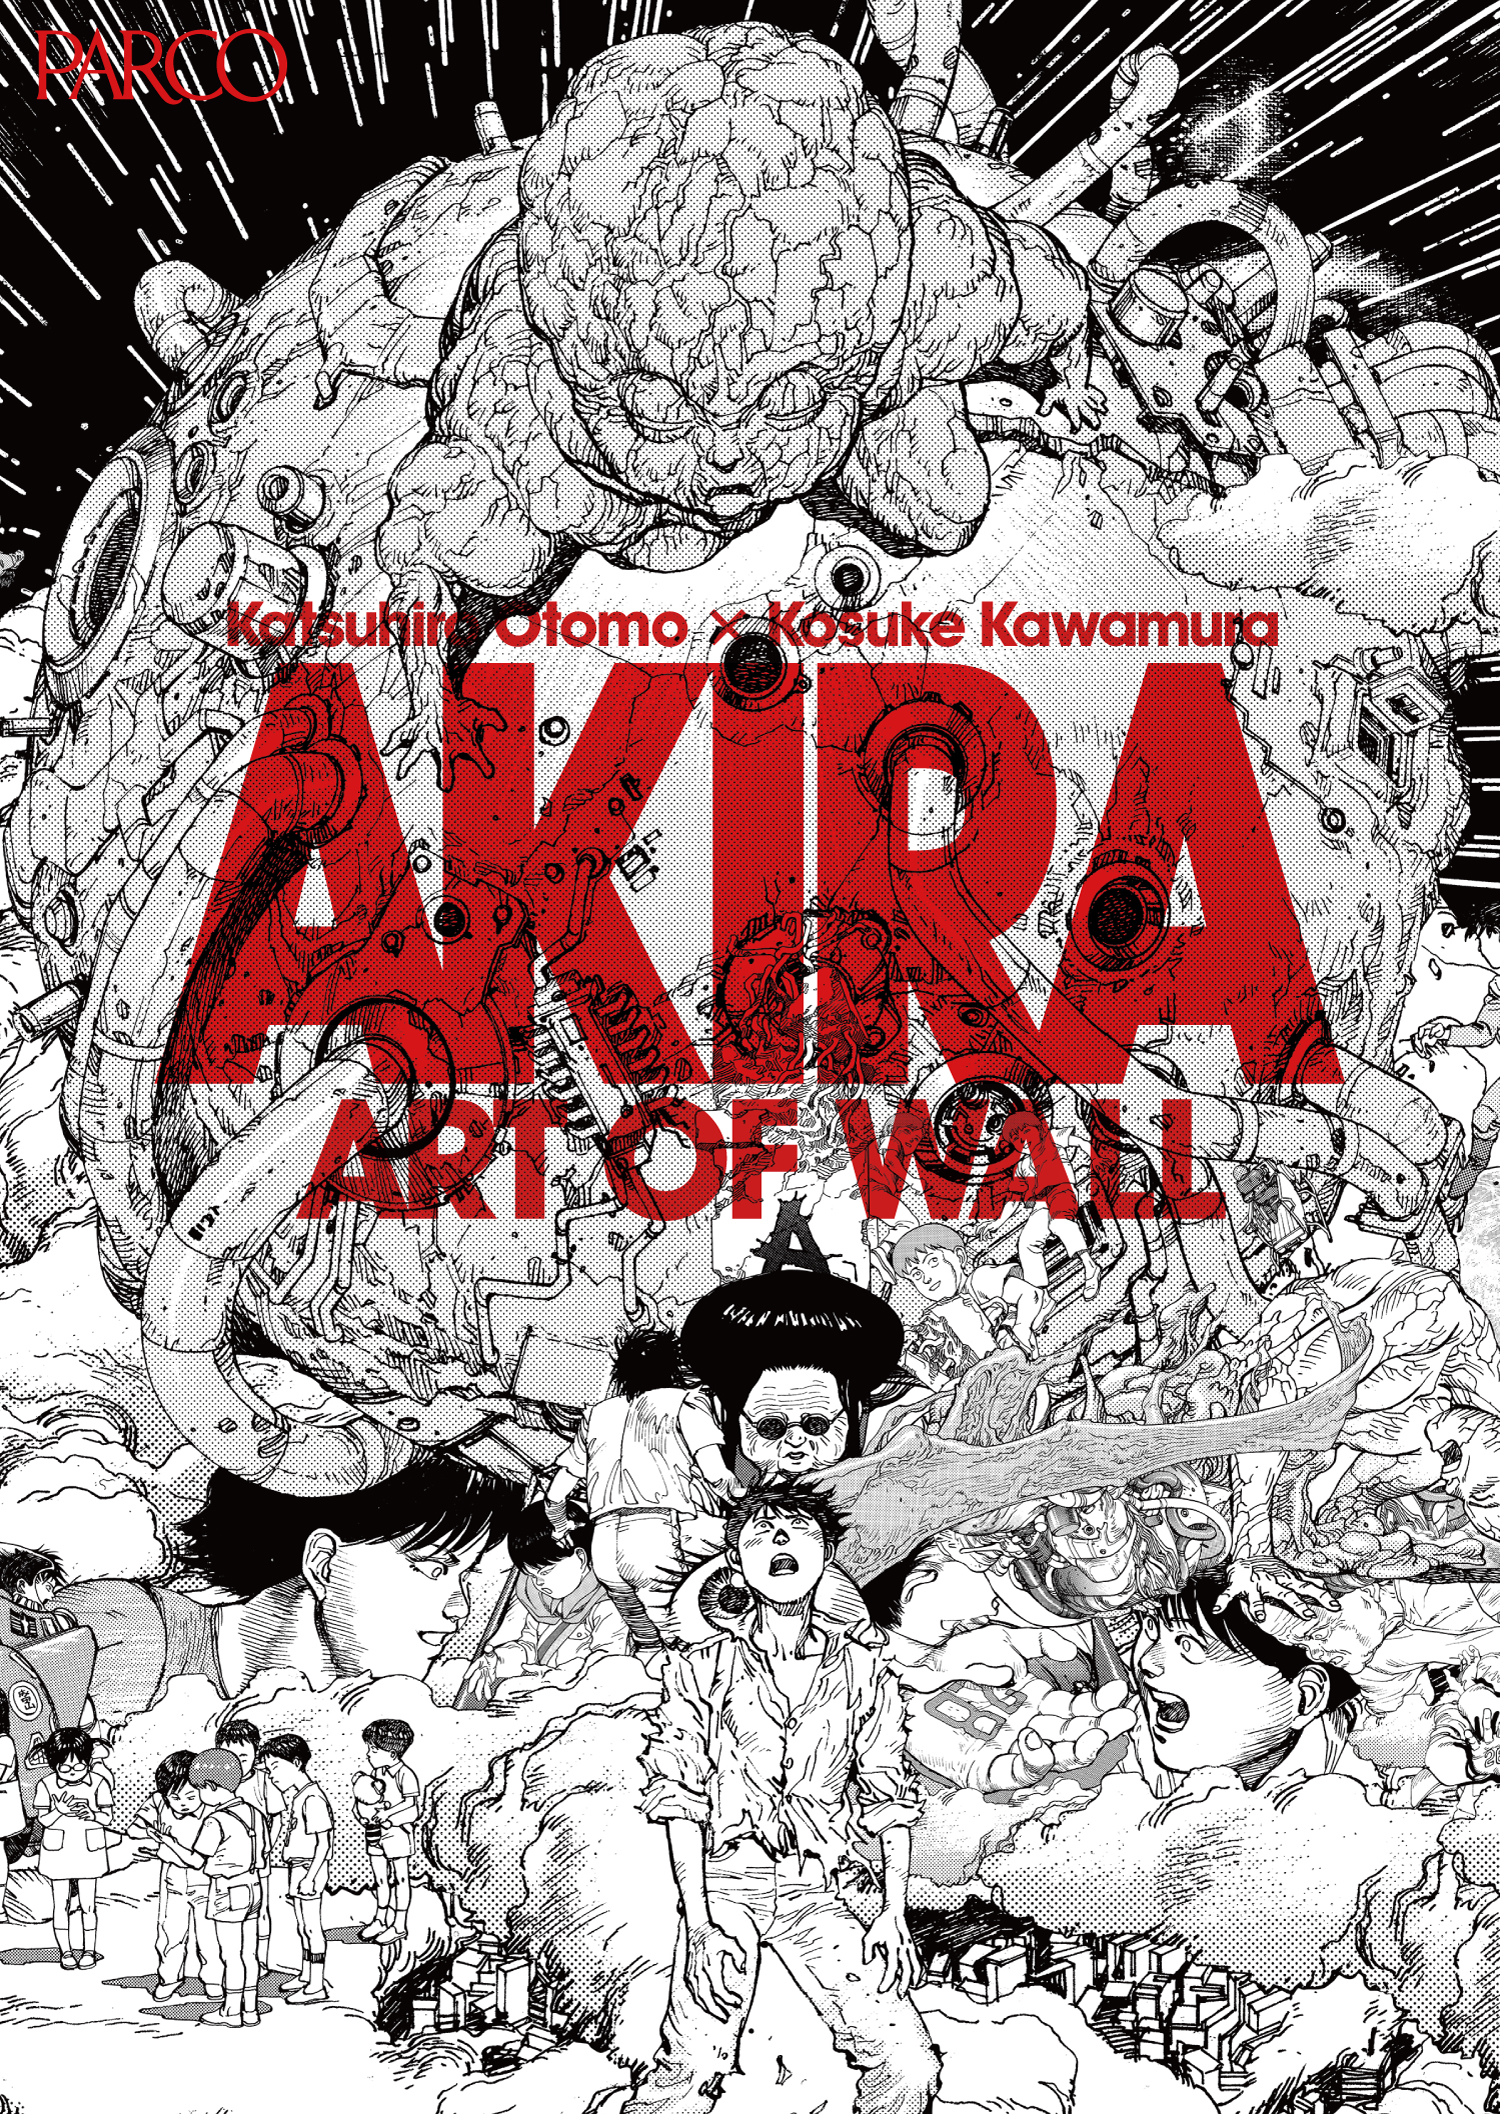 AKIRA ART OF WALL Variety KATSUHIRO OTOMO Illustration Art Book